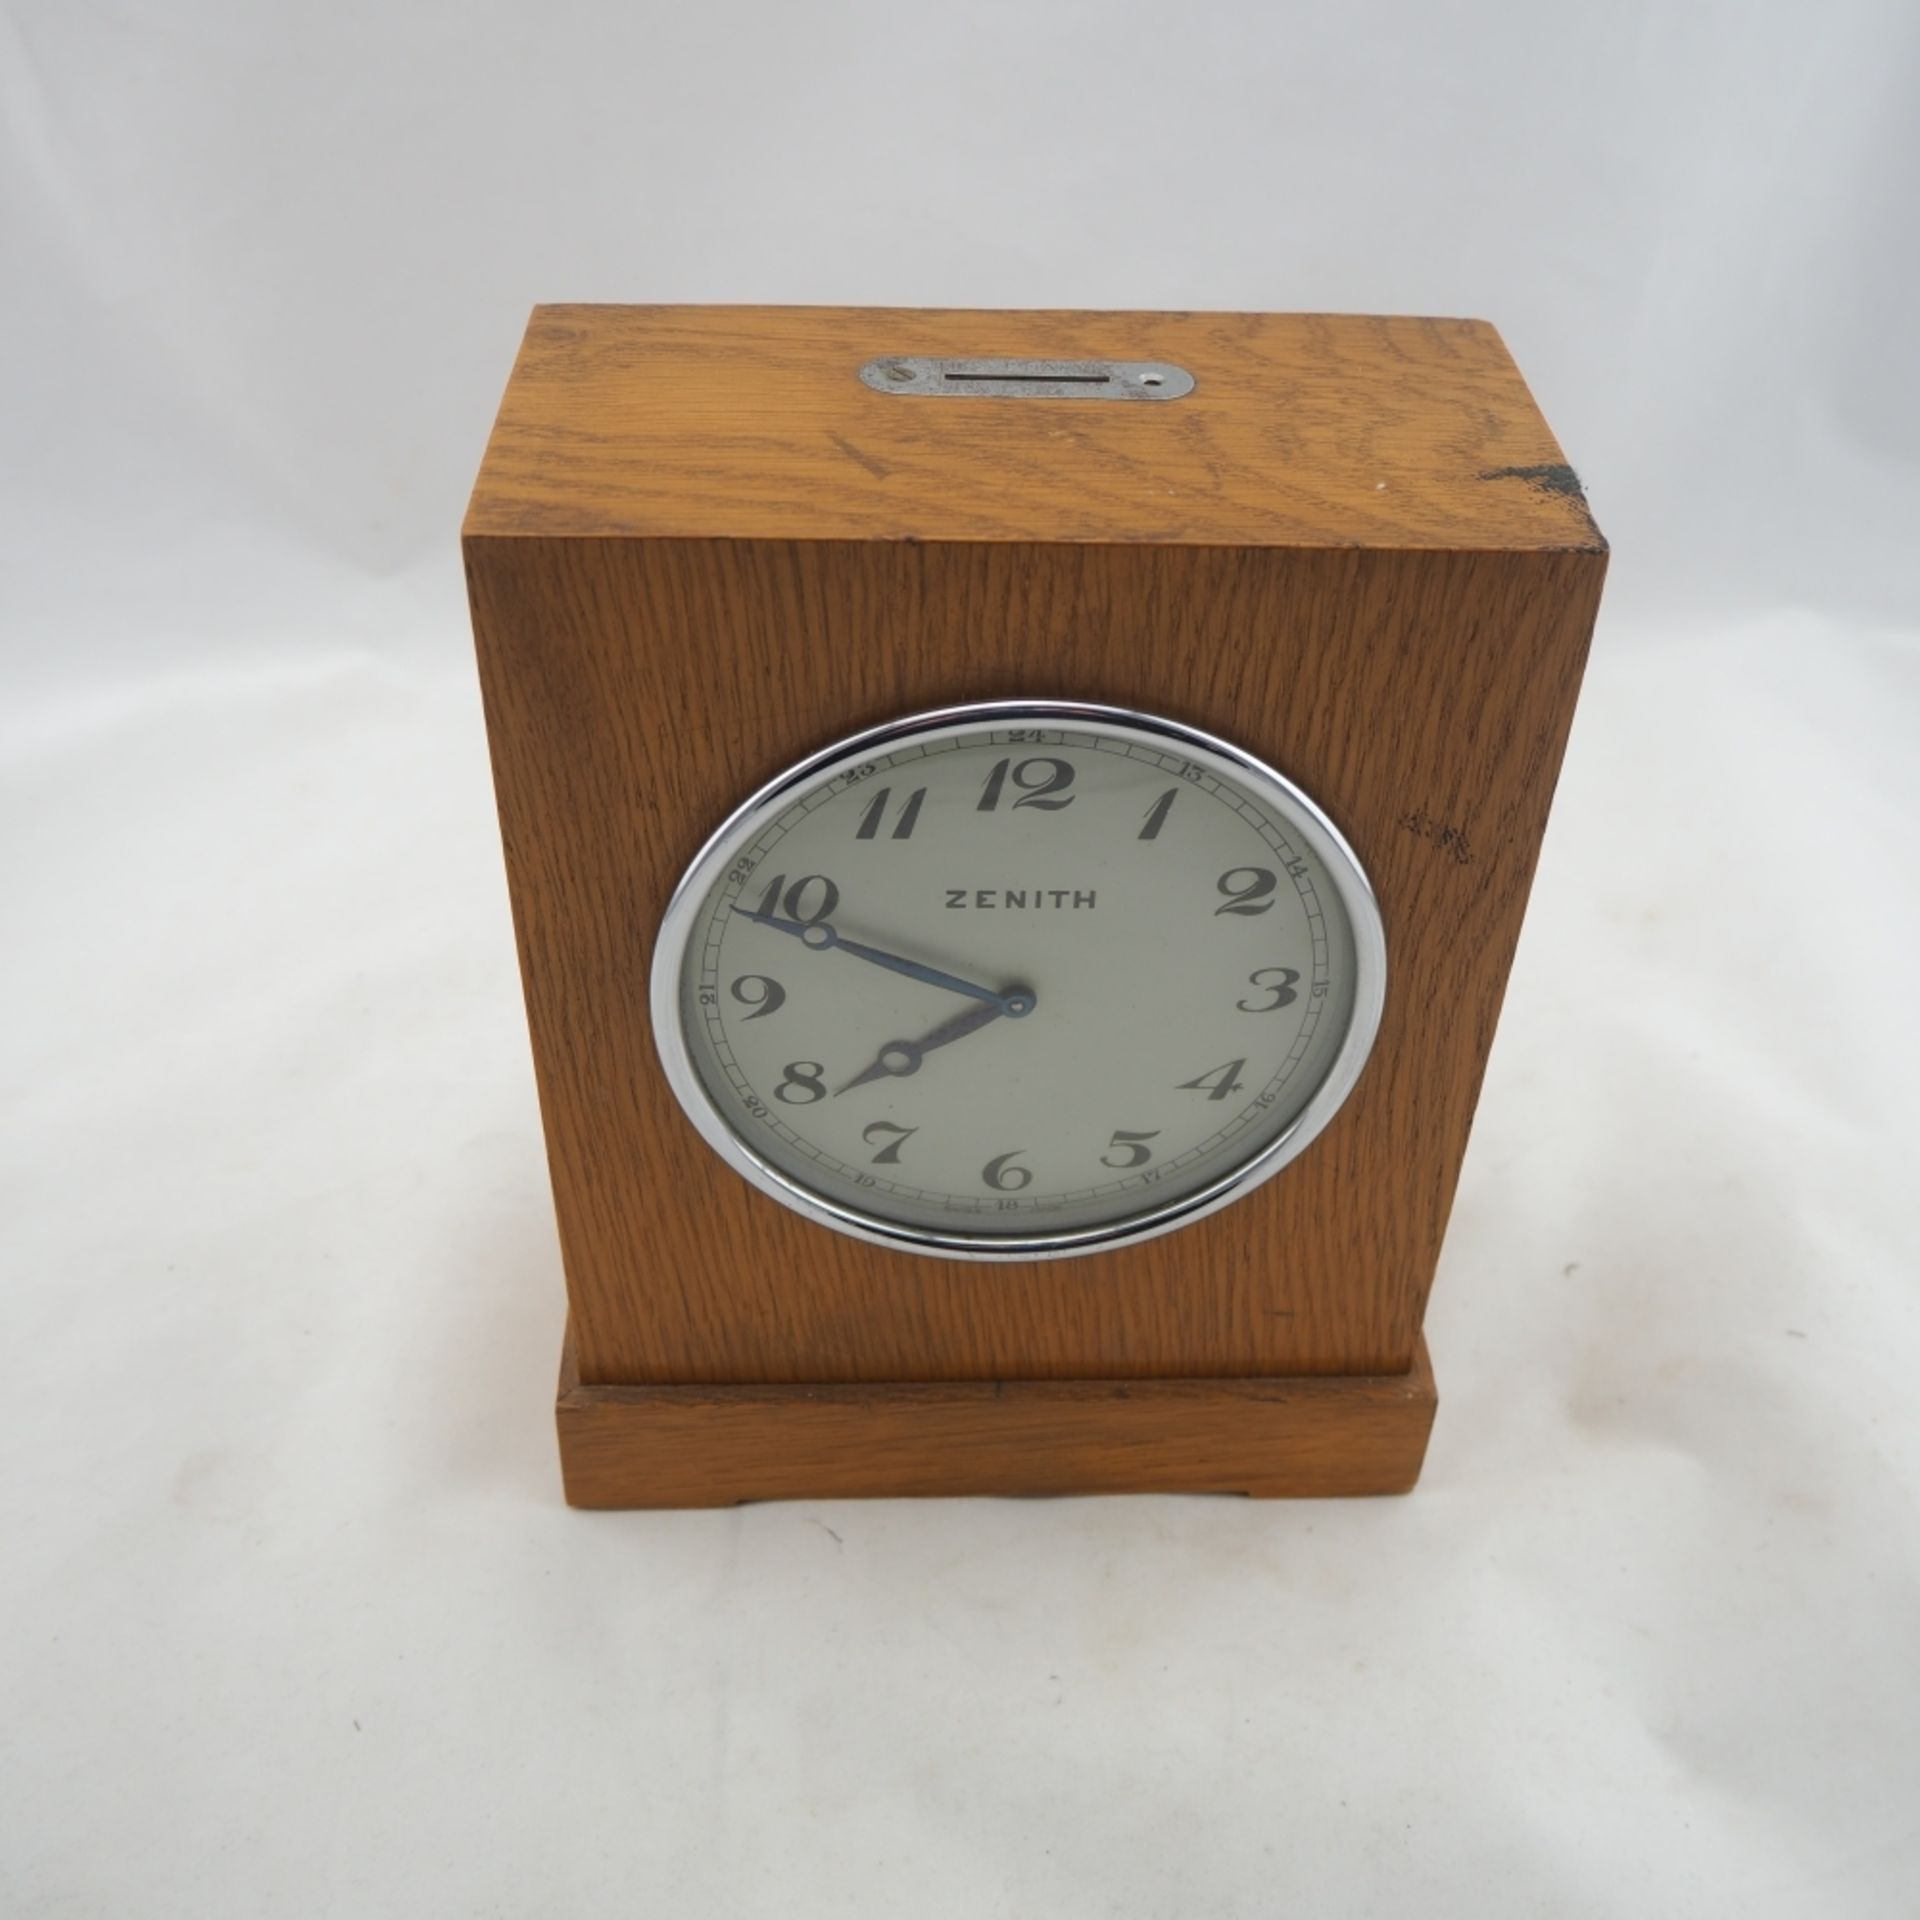 Seltene "Zenith" Spareruhr, 30er JahreGehäuse aus Holz (Eiche), mittig eingebautes Uhrwe - Bild 4 aus 5